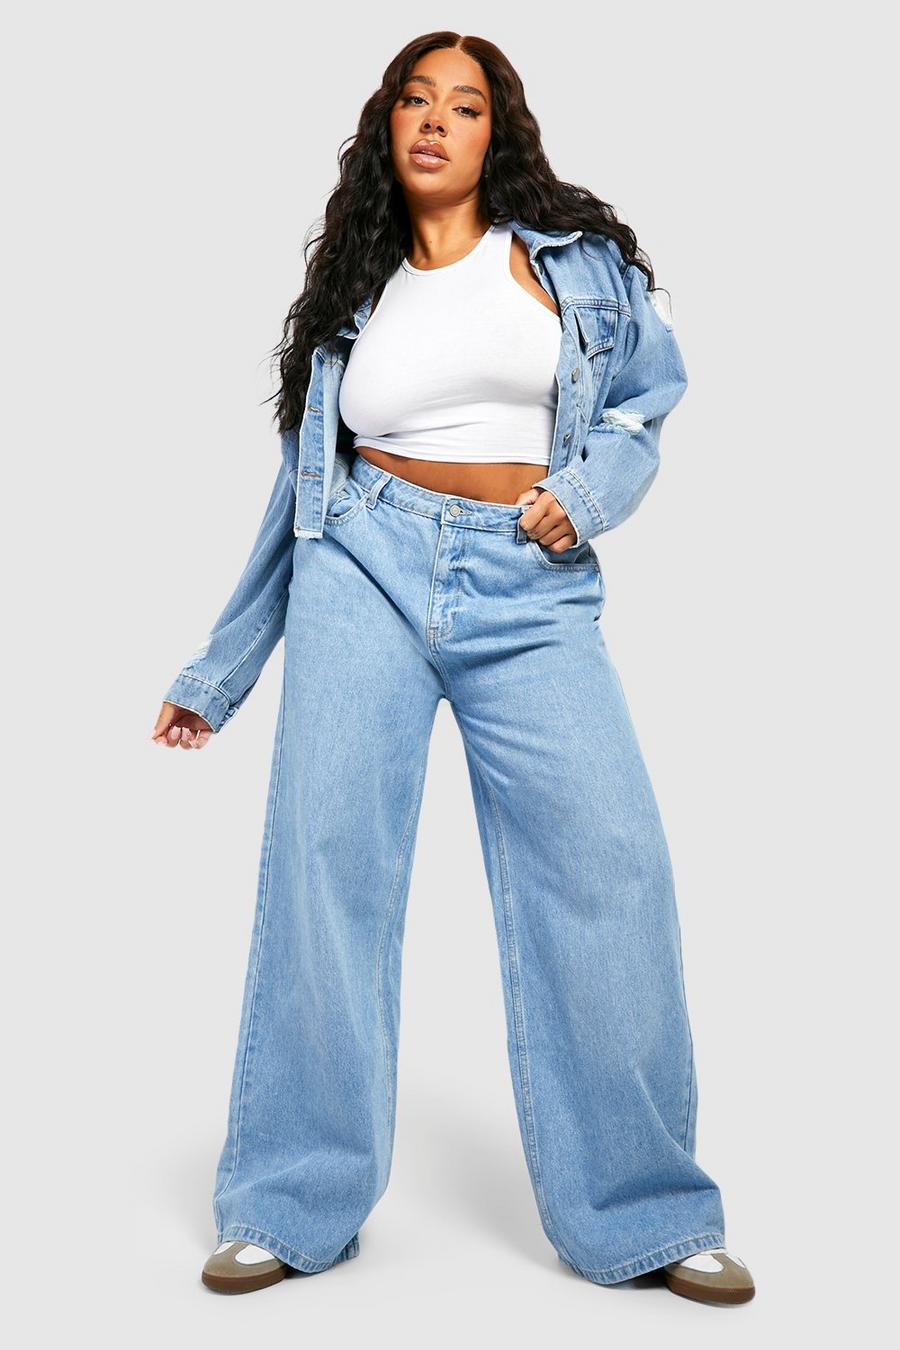 Plus Size Jeans, Women's Plus Size Jeans